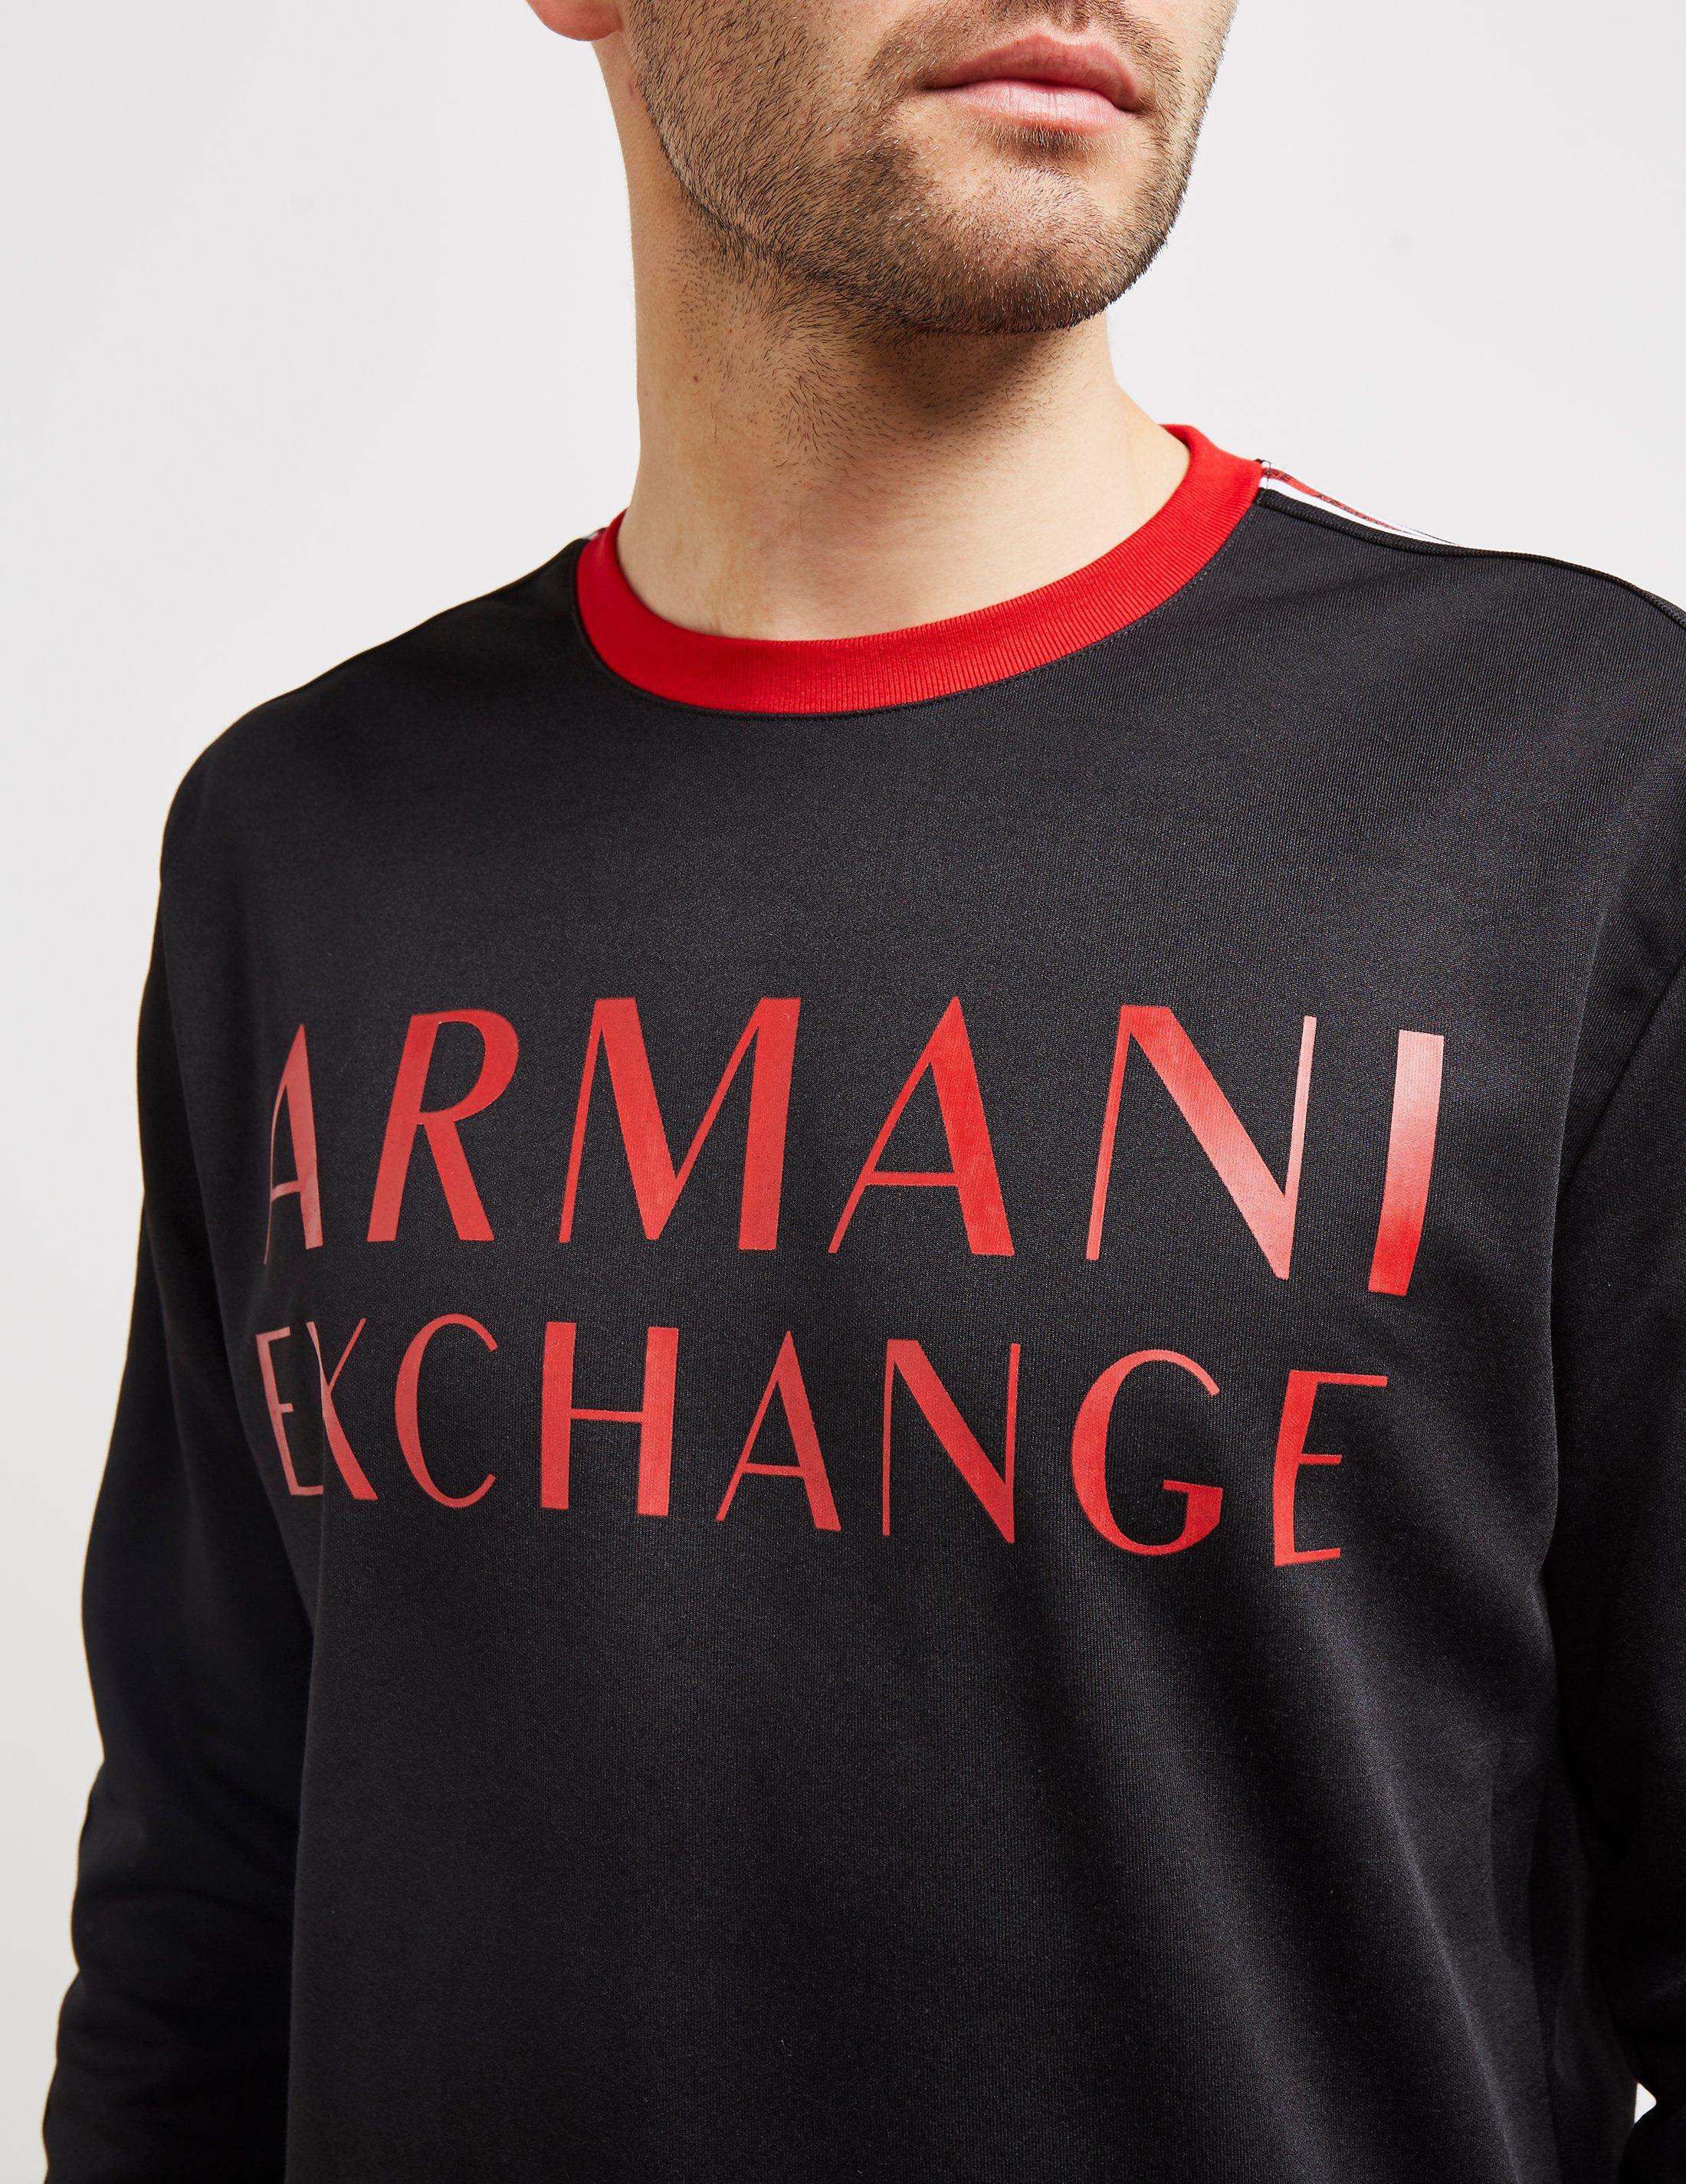 armani exchange red sweatshirt